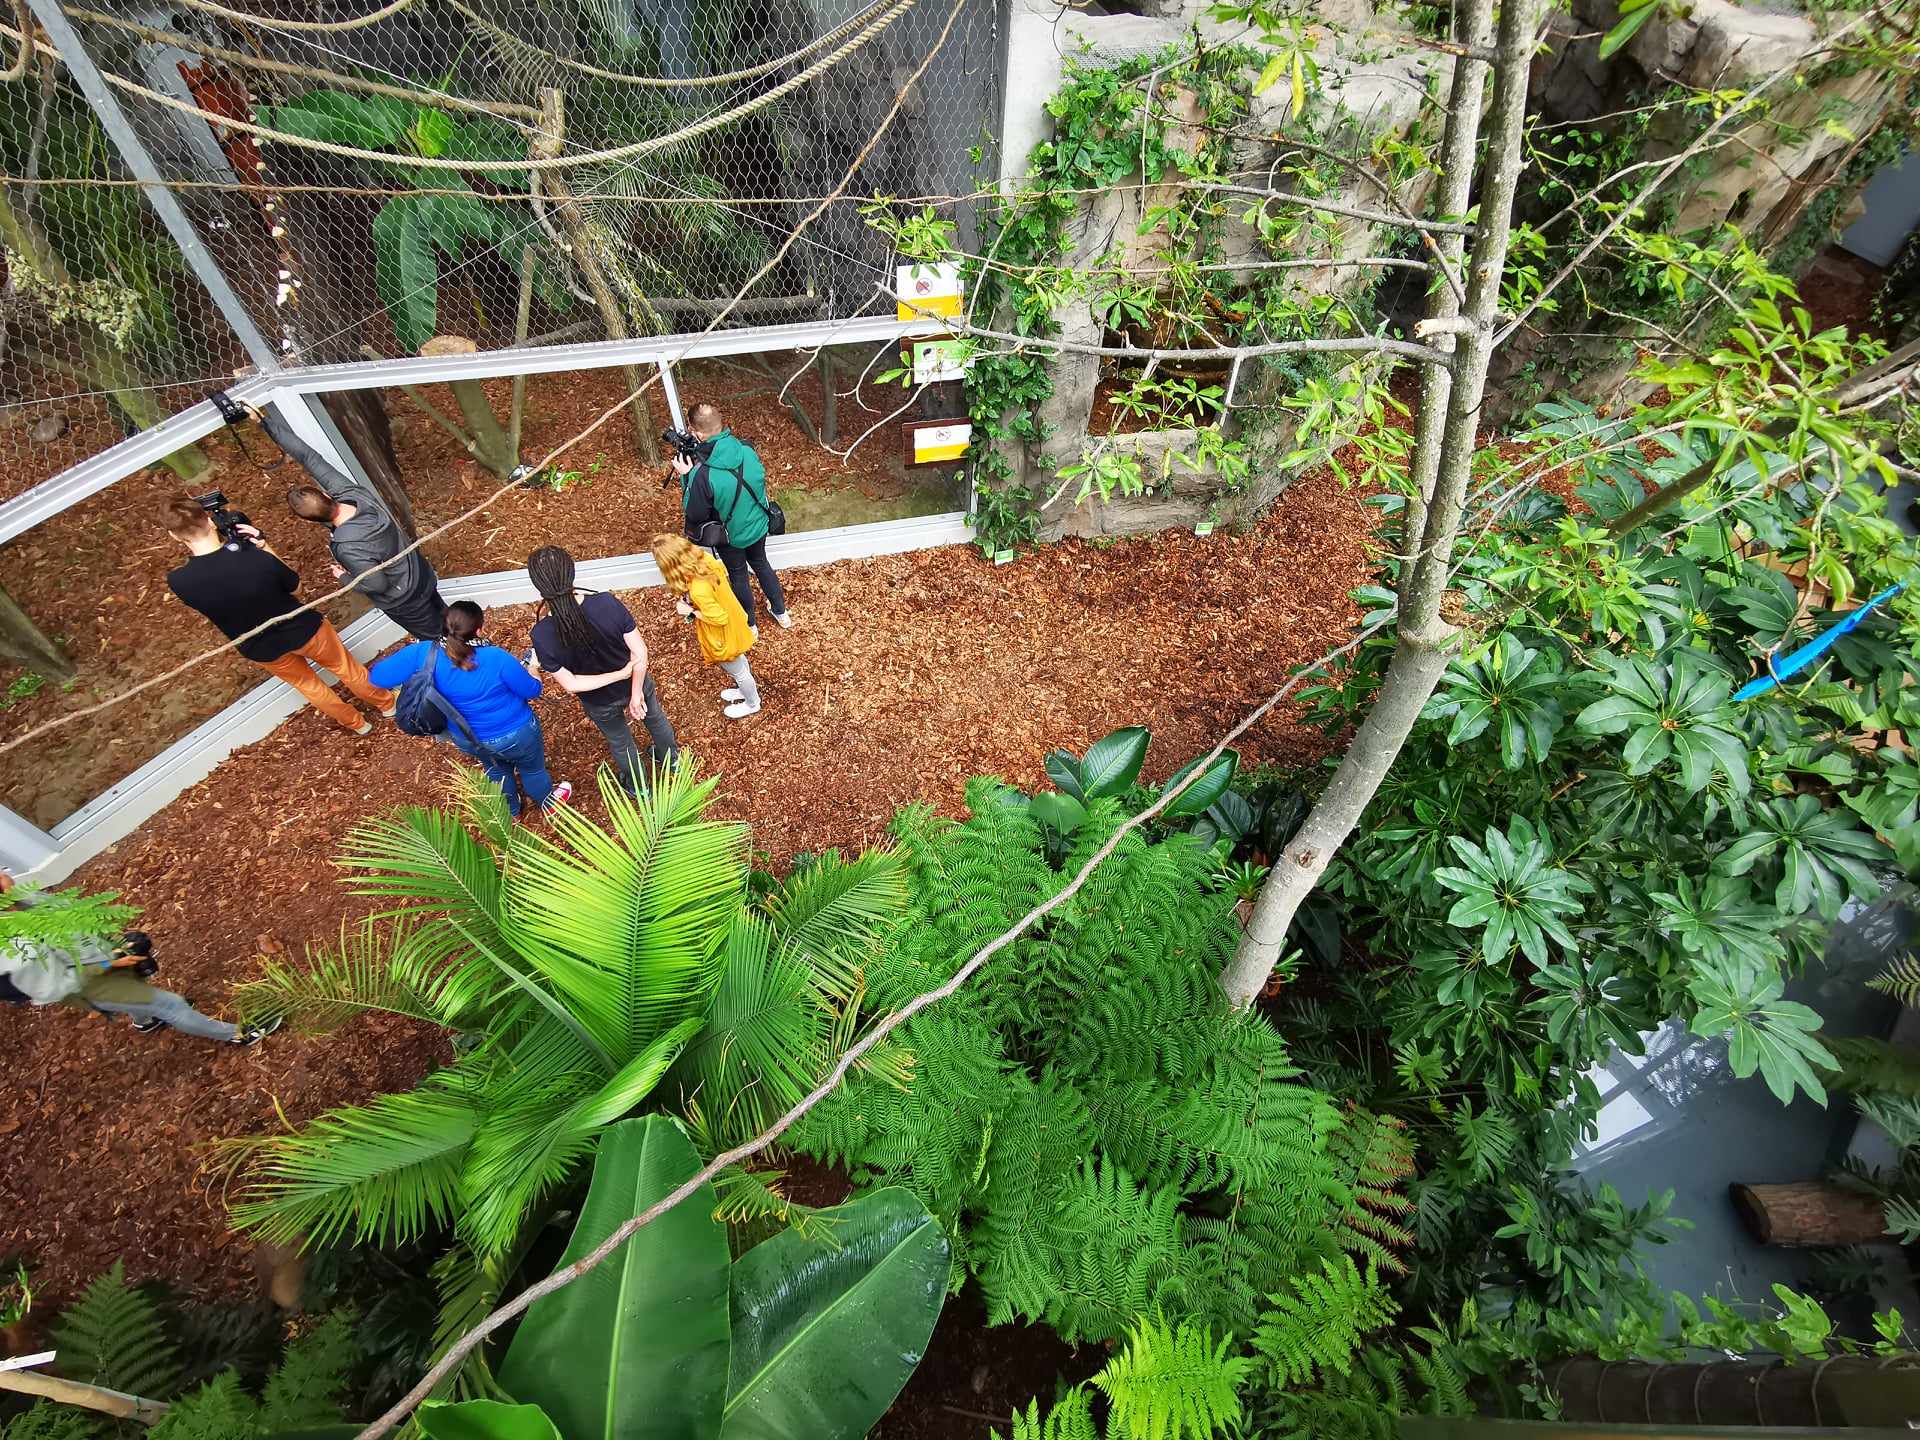 zoo w chorzowie Pawilon lasów deszczowych Ameryki Południowej